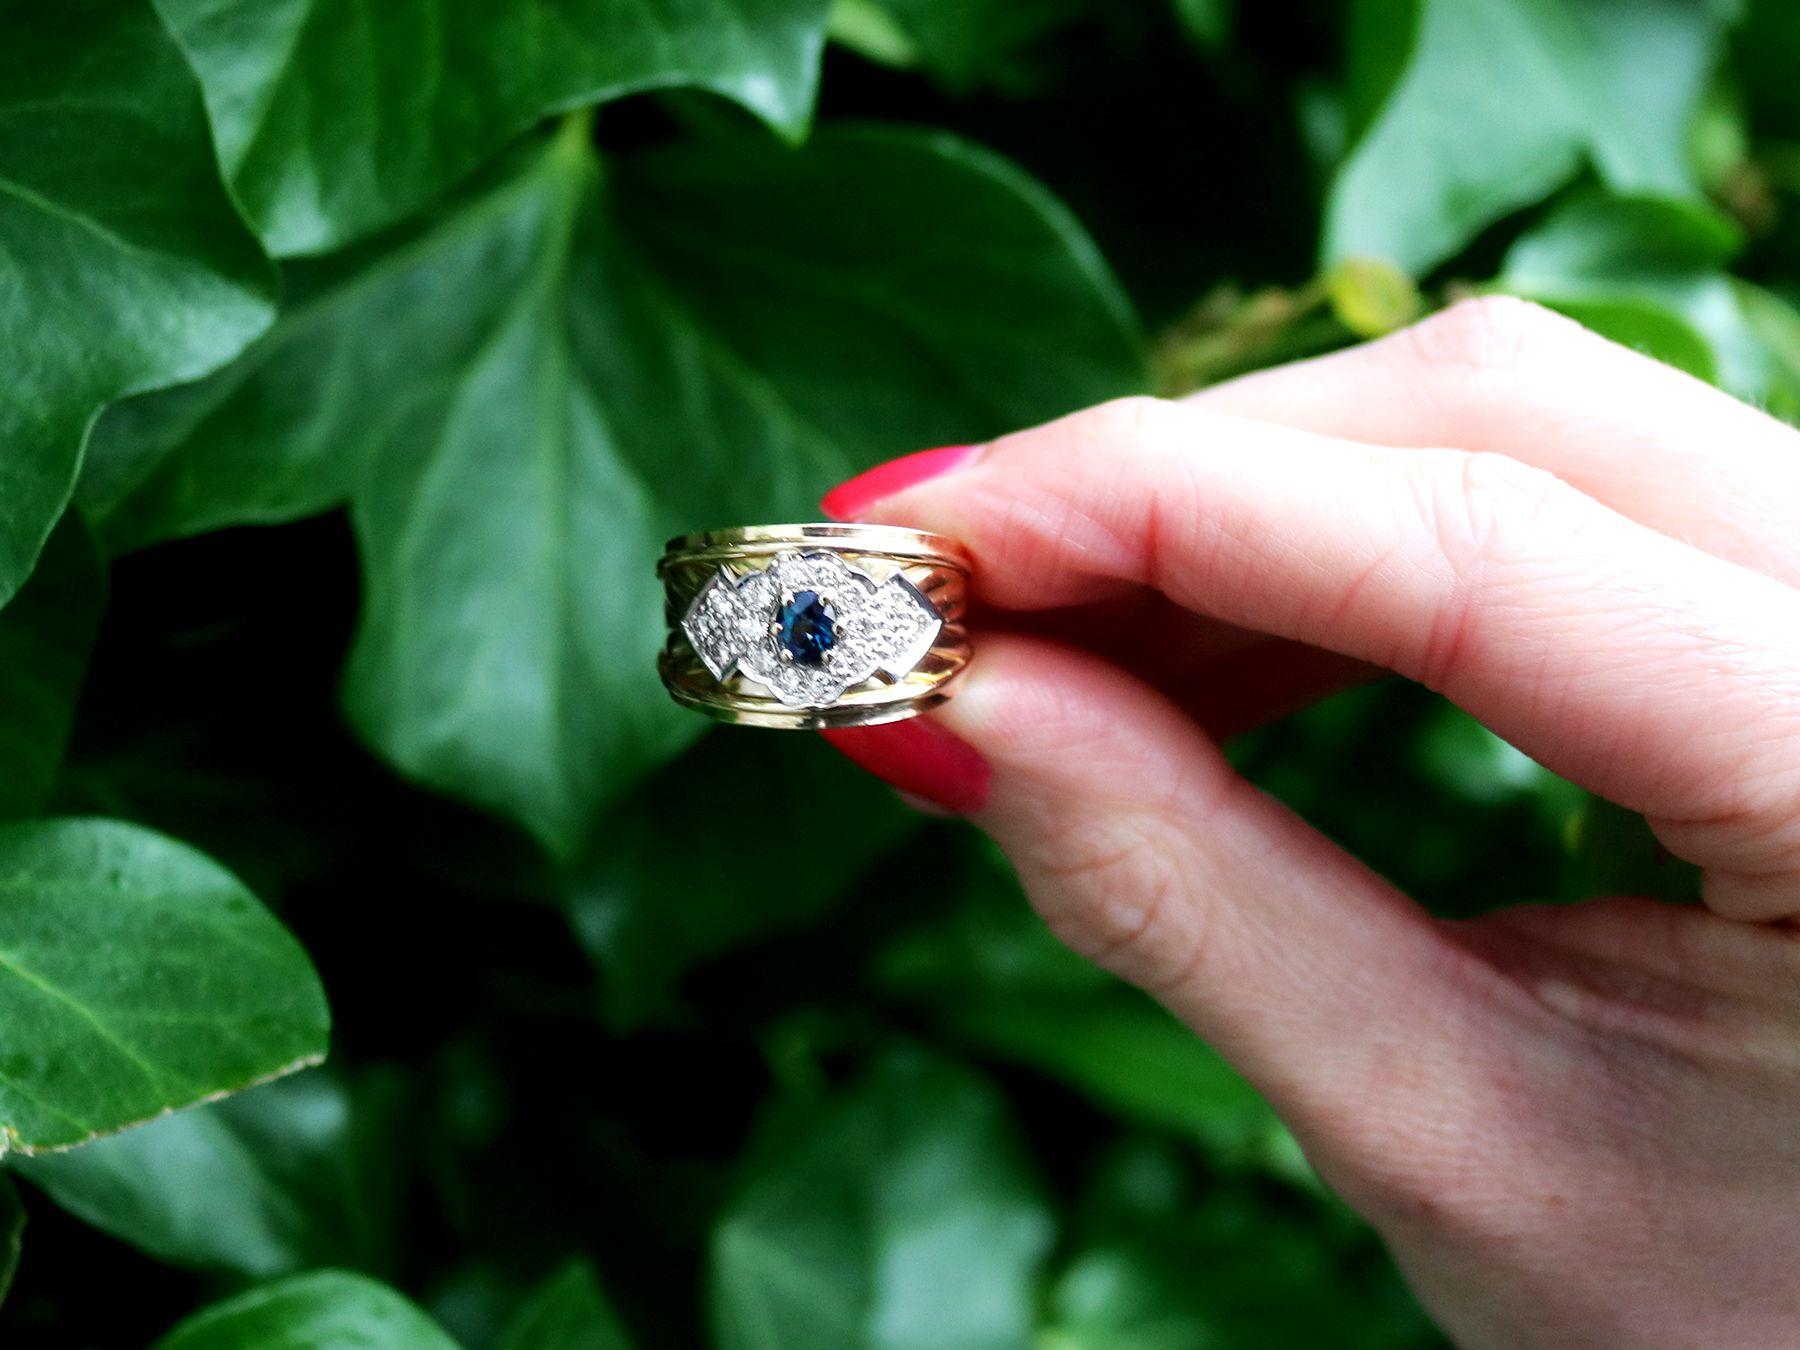 Ein feiner und beeindruckender Ring mit 0,37 Saphiren und 0,32 Karat Diamanten aus 18 Karat Gelbgold und 18 Karat Weißgold; Teil unserer vielfältigen Vintage-Schmuckkollektionen.

Dieser beeindruckende Vintage-Ring mit Saphiren und Diamanten ist aus